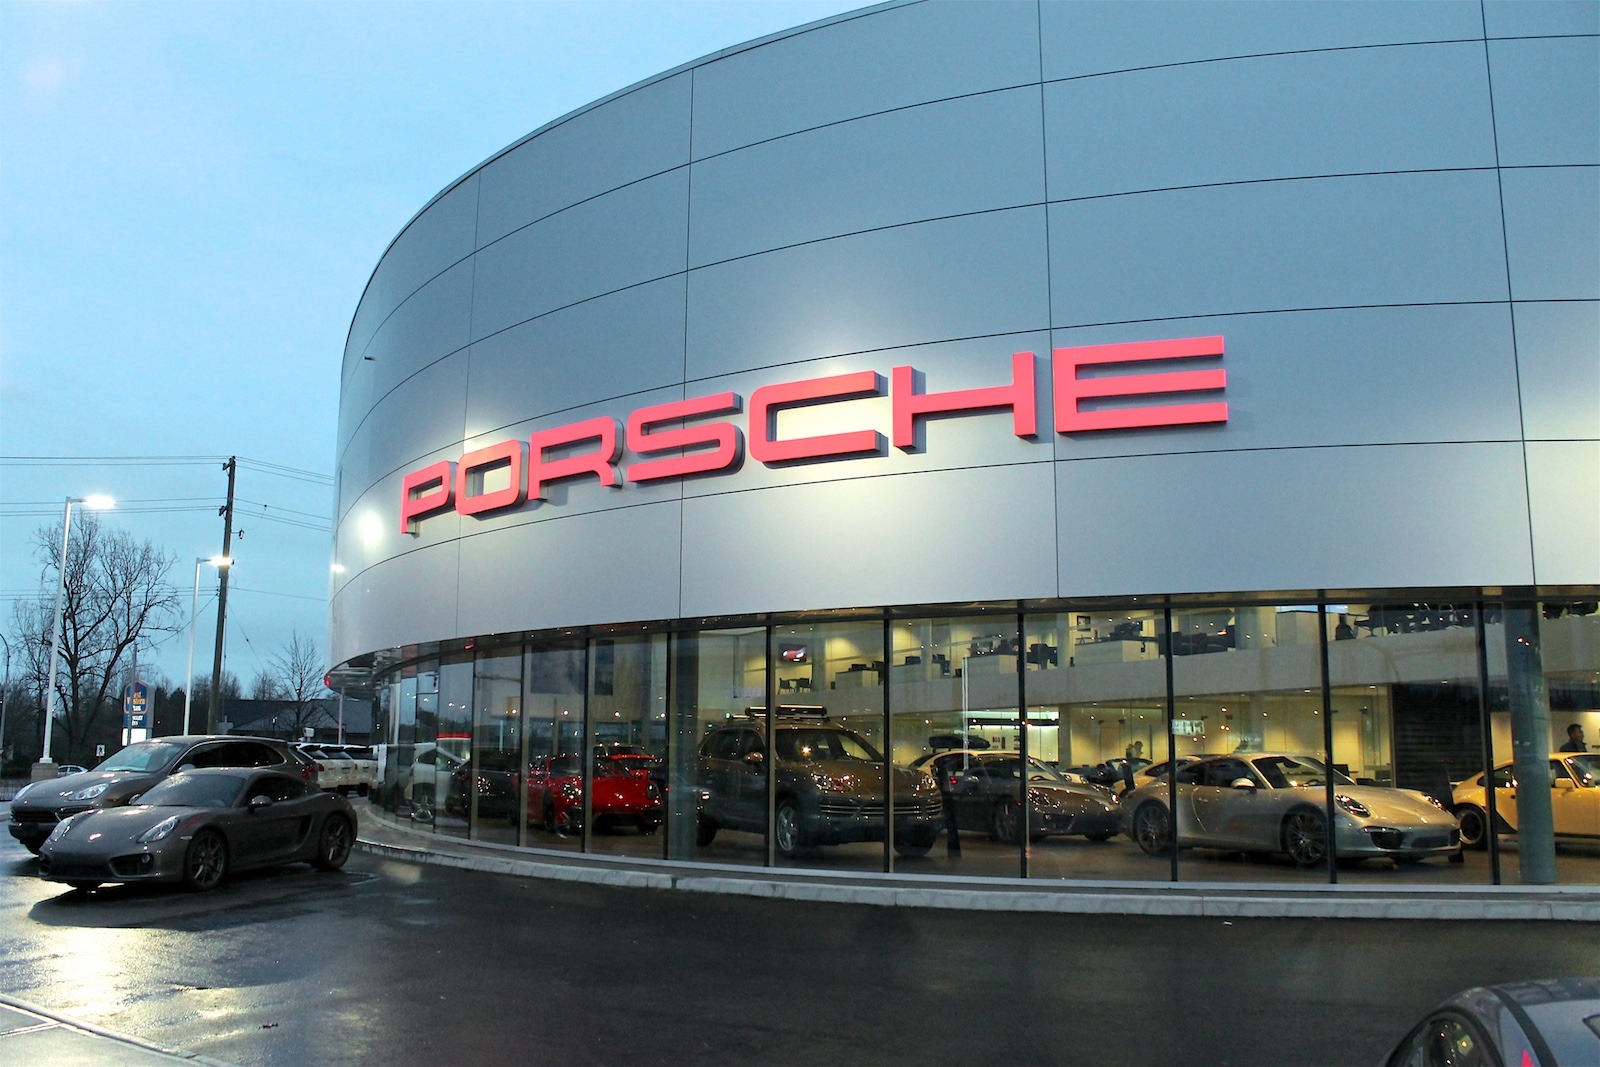 Open Road Porsche Luxury Car Dealership Completed October 2014